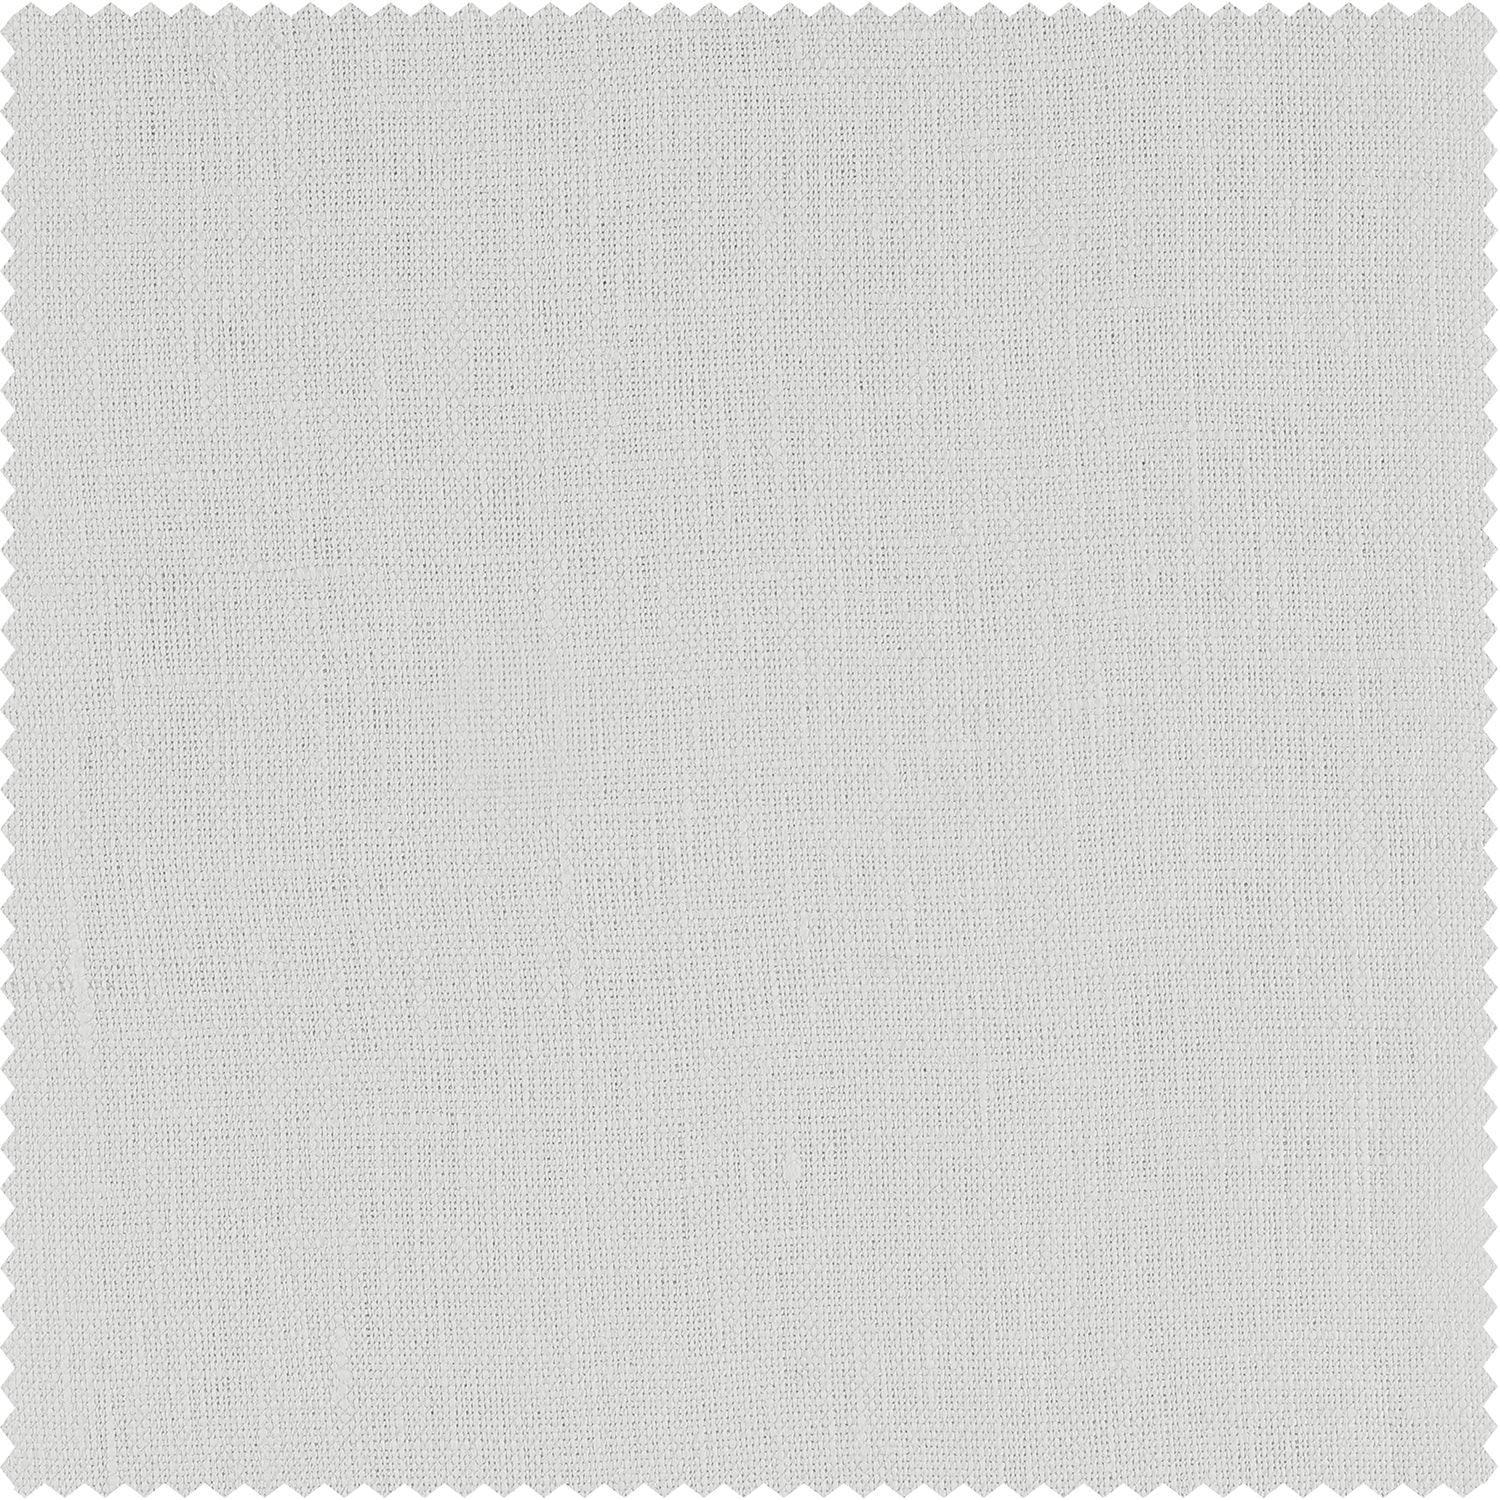 Crisp White French Linen Curtain